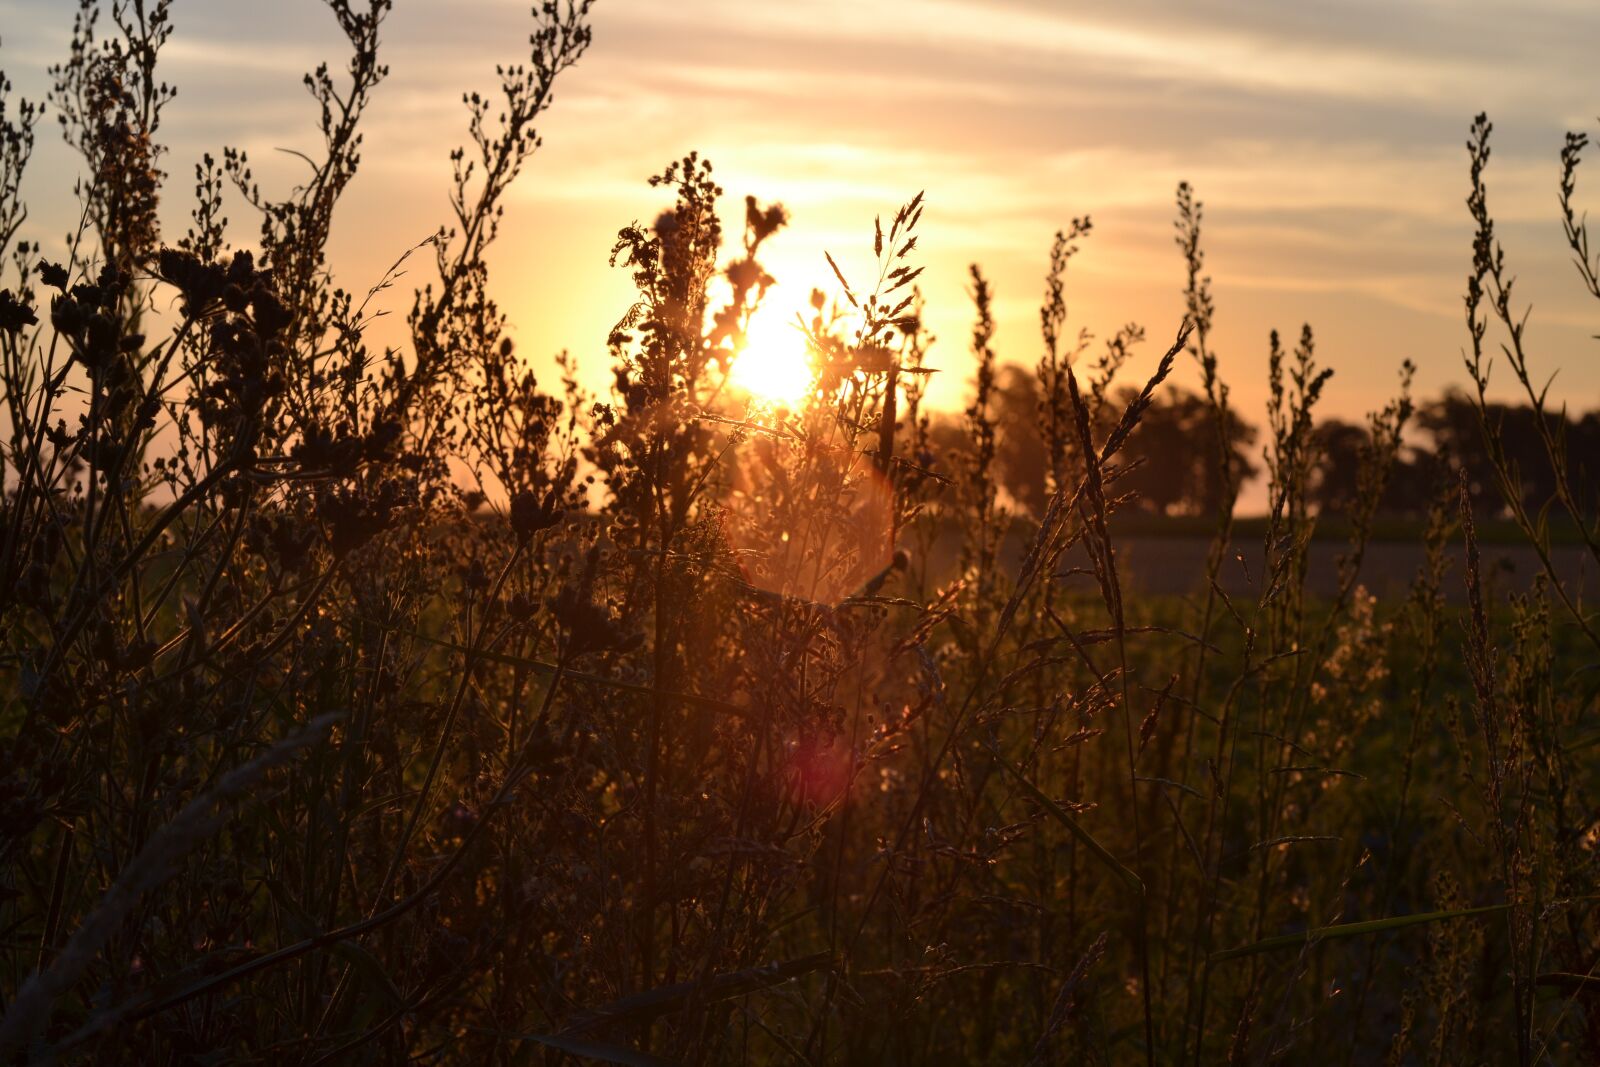 Nikon D3100 sample photo. Nature, sunset, sun photography